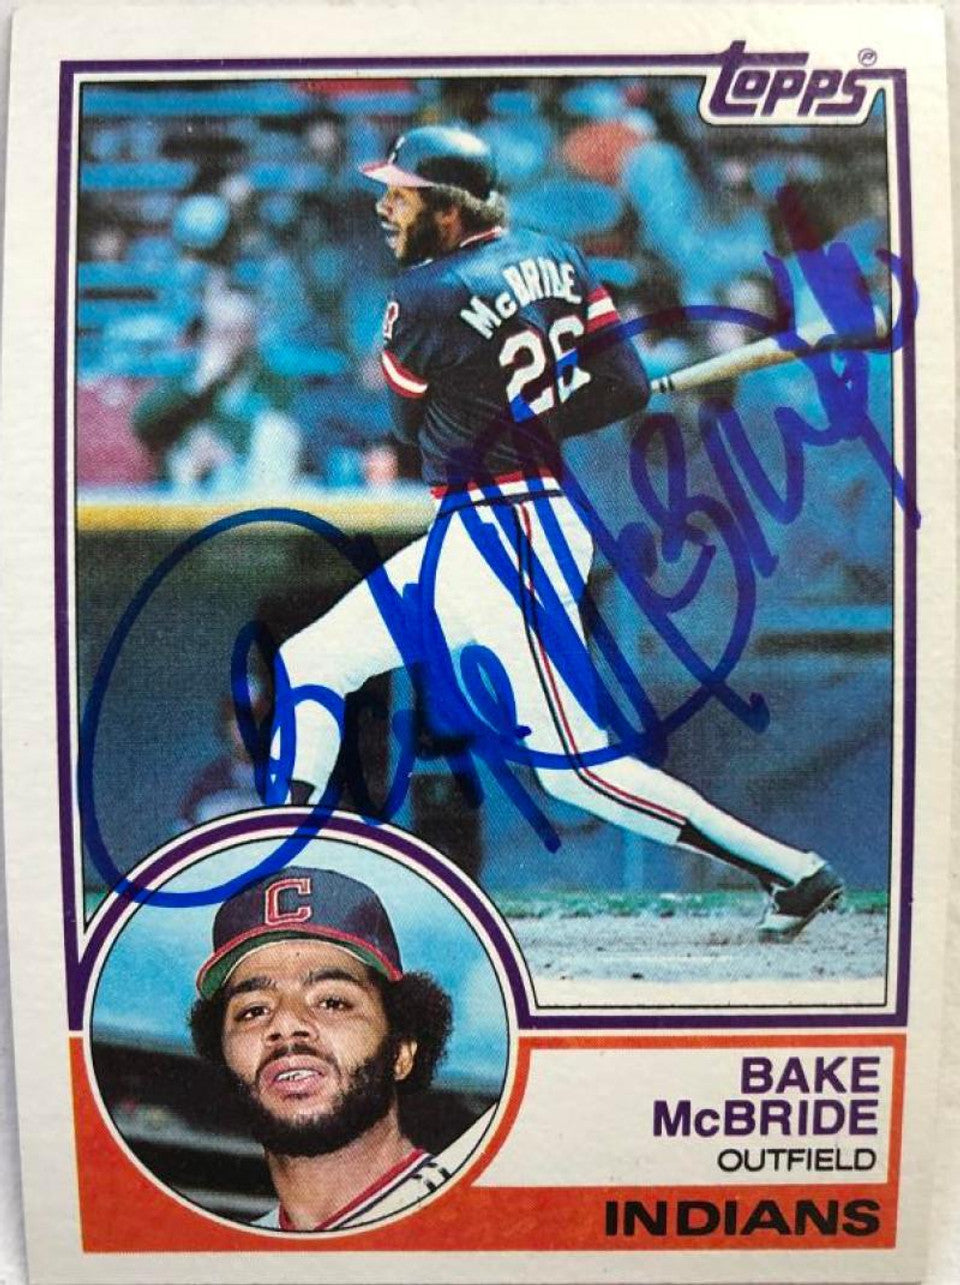 ベイク マクブライド サイン入り 1983 トップス ベースボール カード - クリーブランド インディアンス